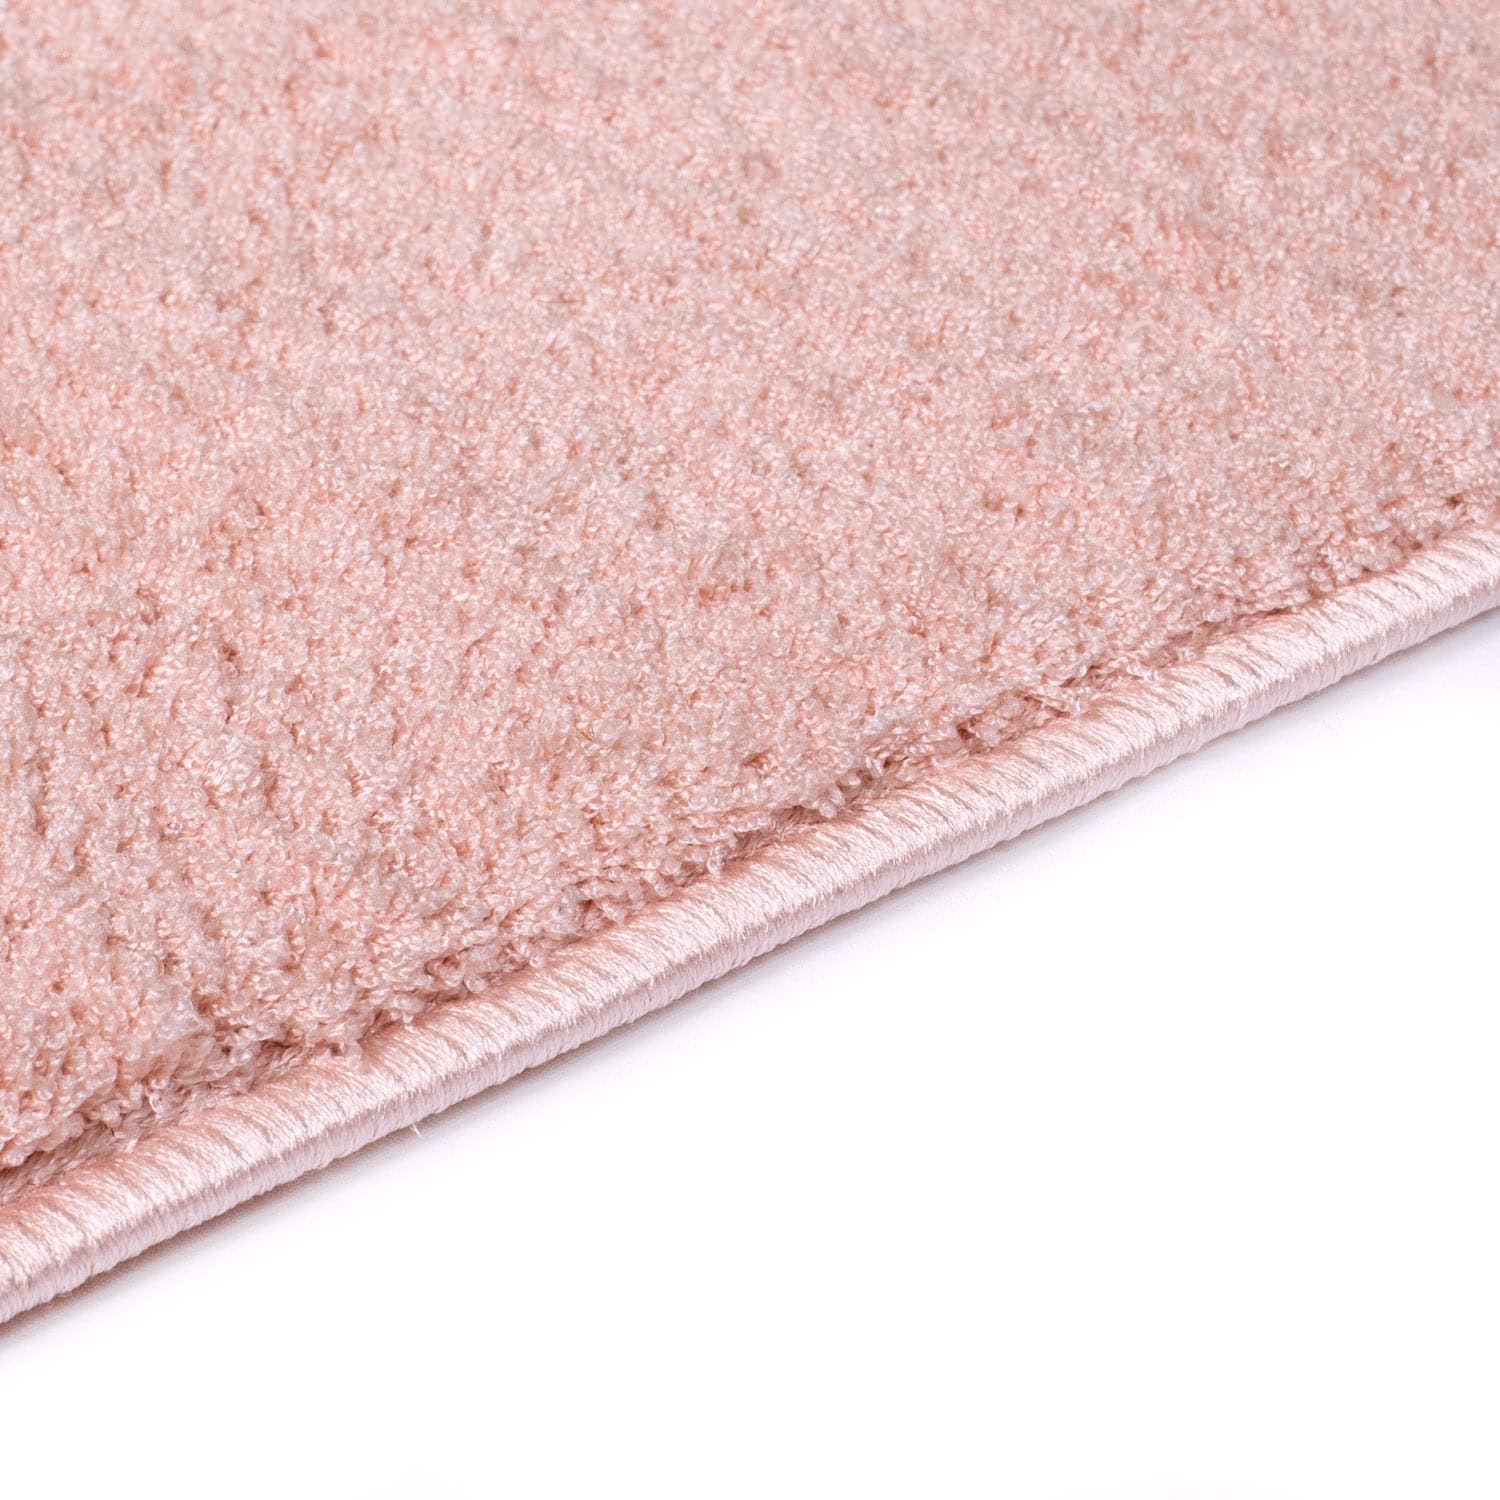 Carpet City Teppich »Softshine 2236«, rechteckig, Hochflor, besonders weich, Uni-Farben